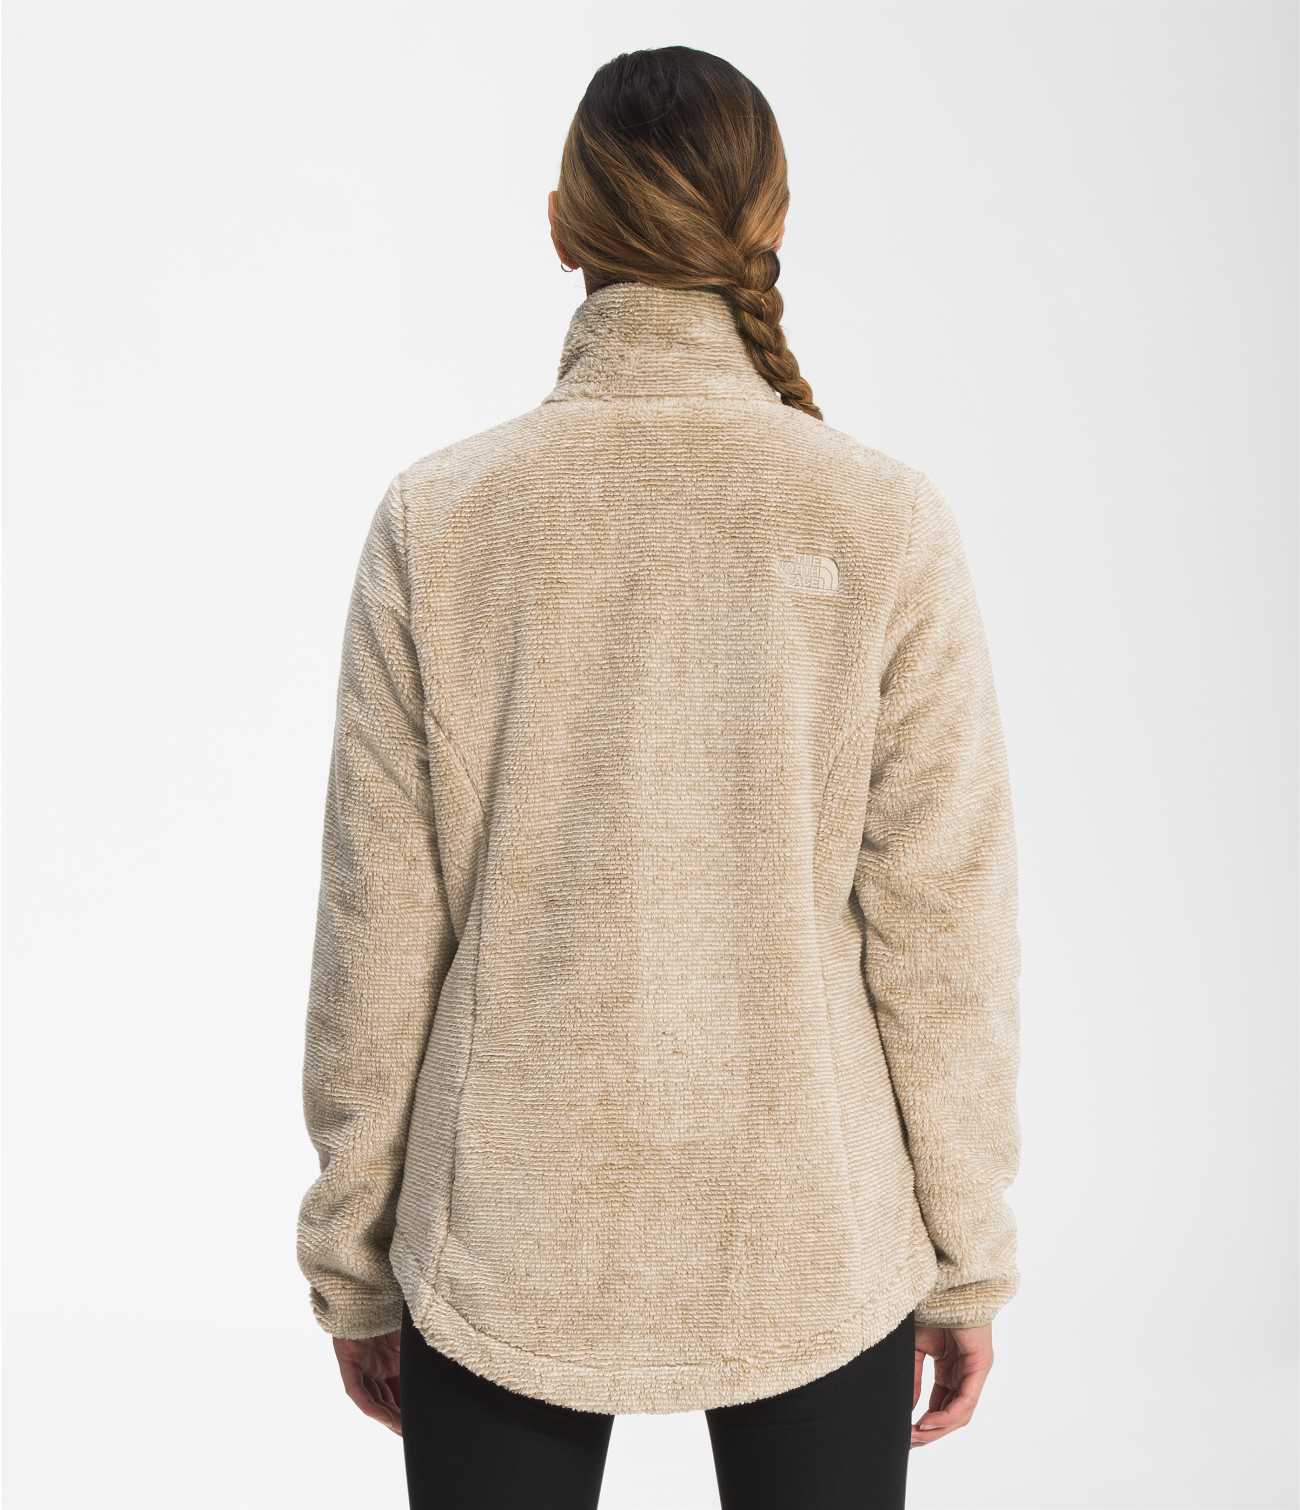 NWOT (Defect) The North Face Women’s Osito Full Zip Fleece Jacket M $150  2D85